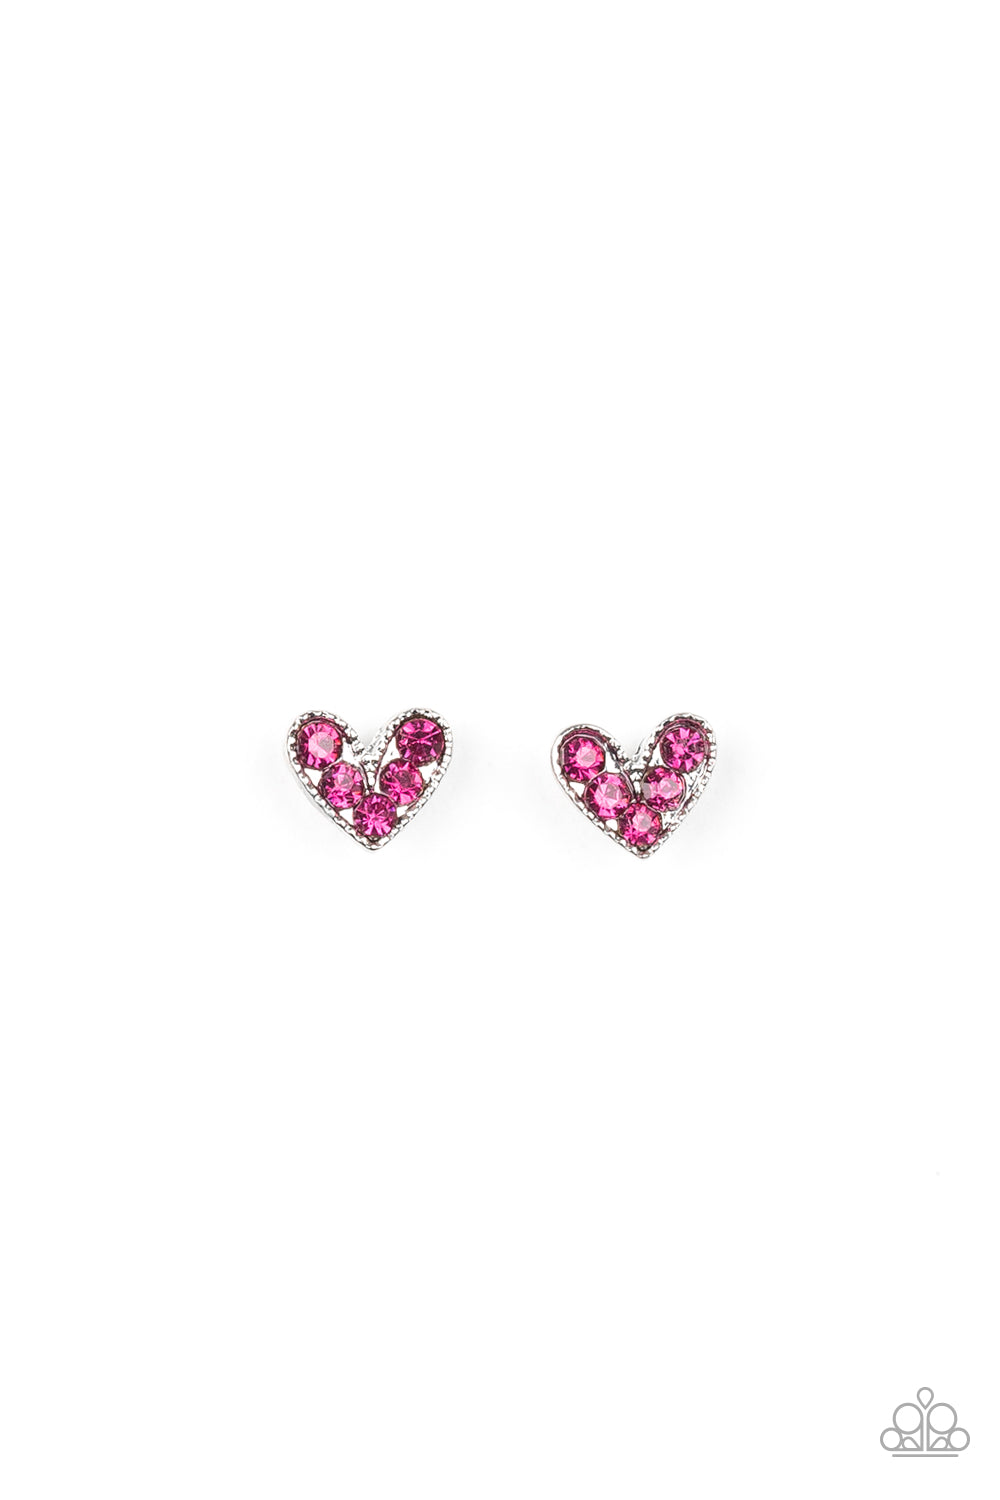 Starlet Shimmer Pink Rhinestone Earring Kit